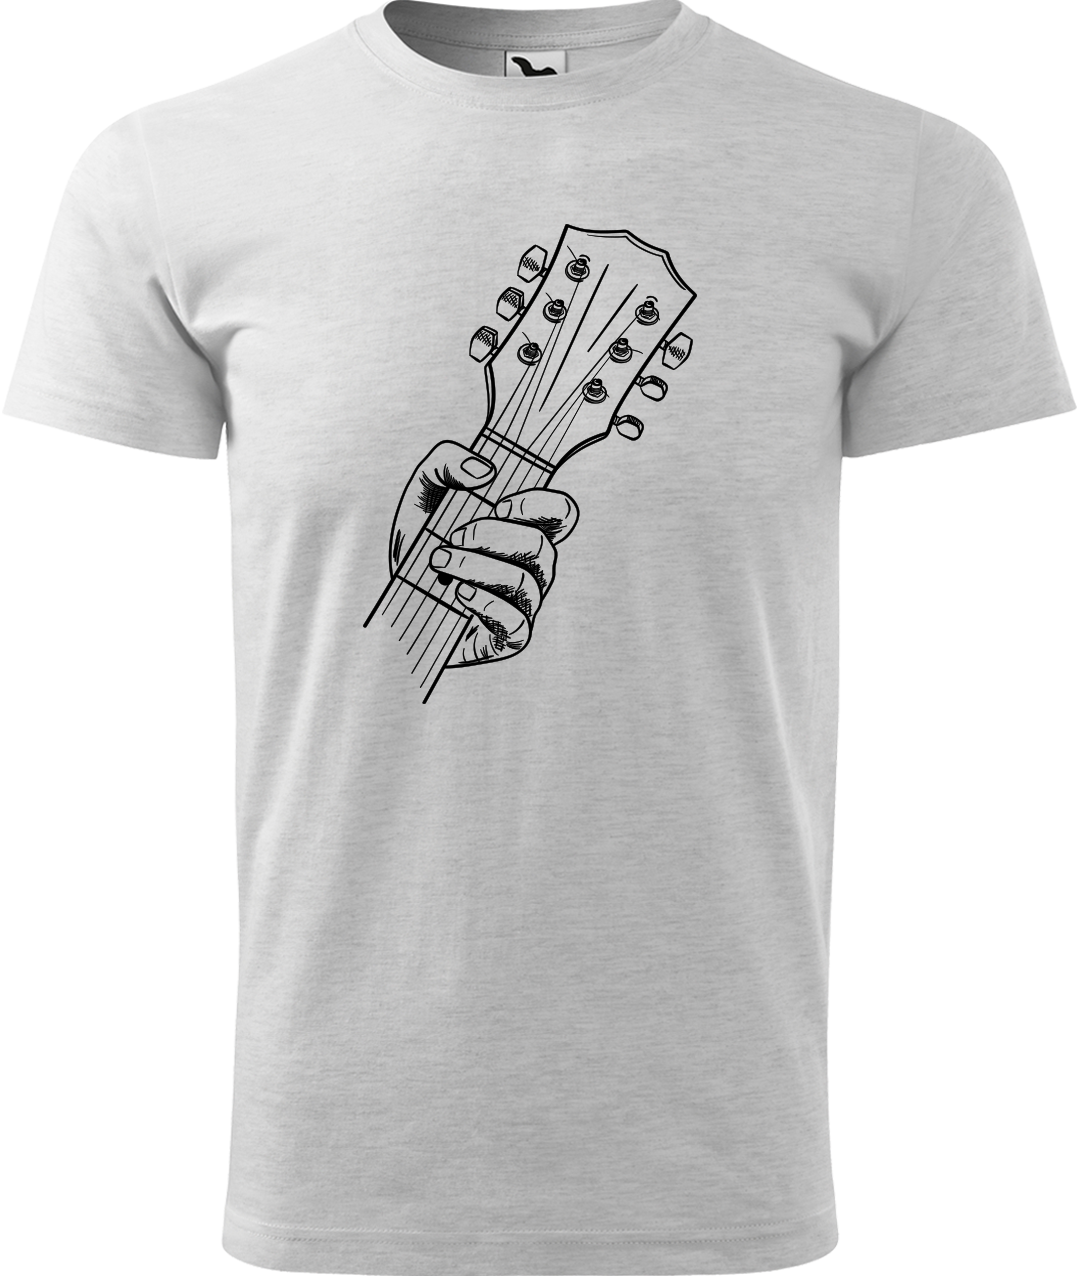 Pánské tričko s kytarou - Hlava kytary Velikost: XL, Barva: Světle šedý melír (03)